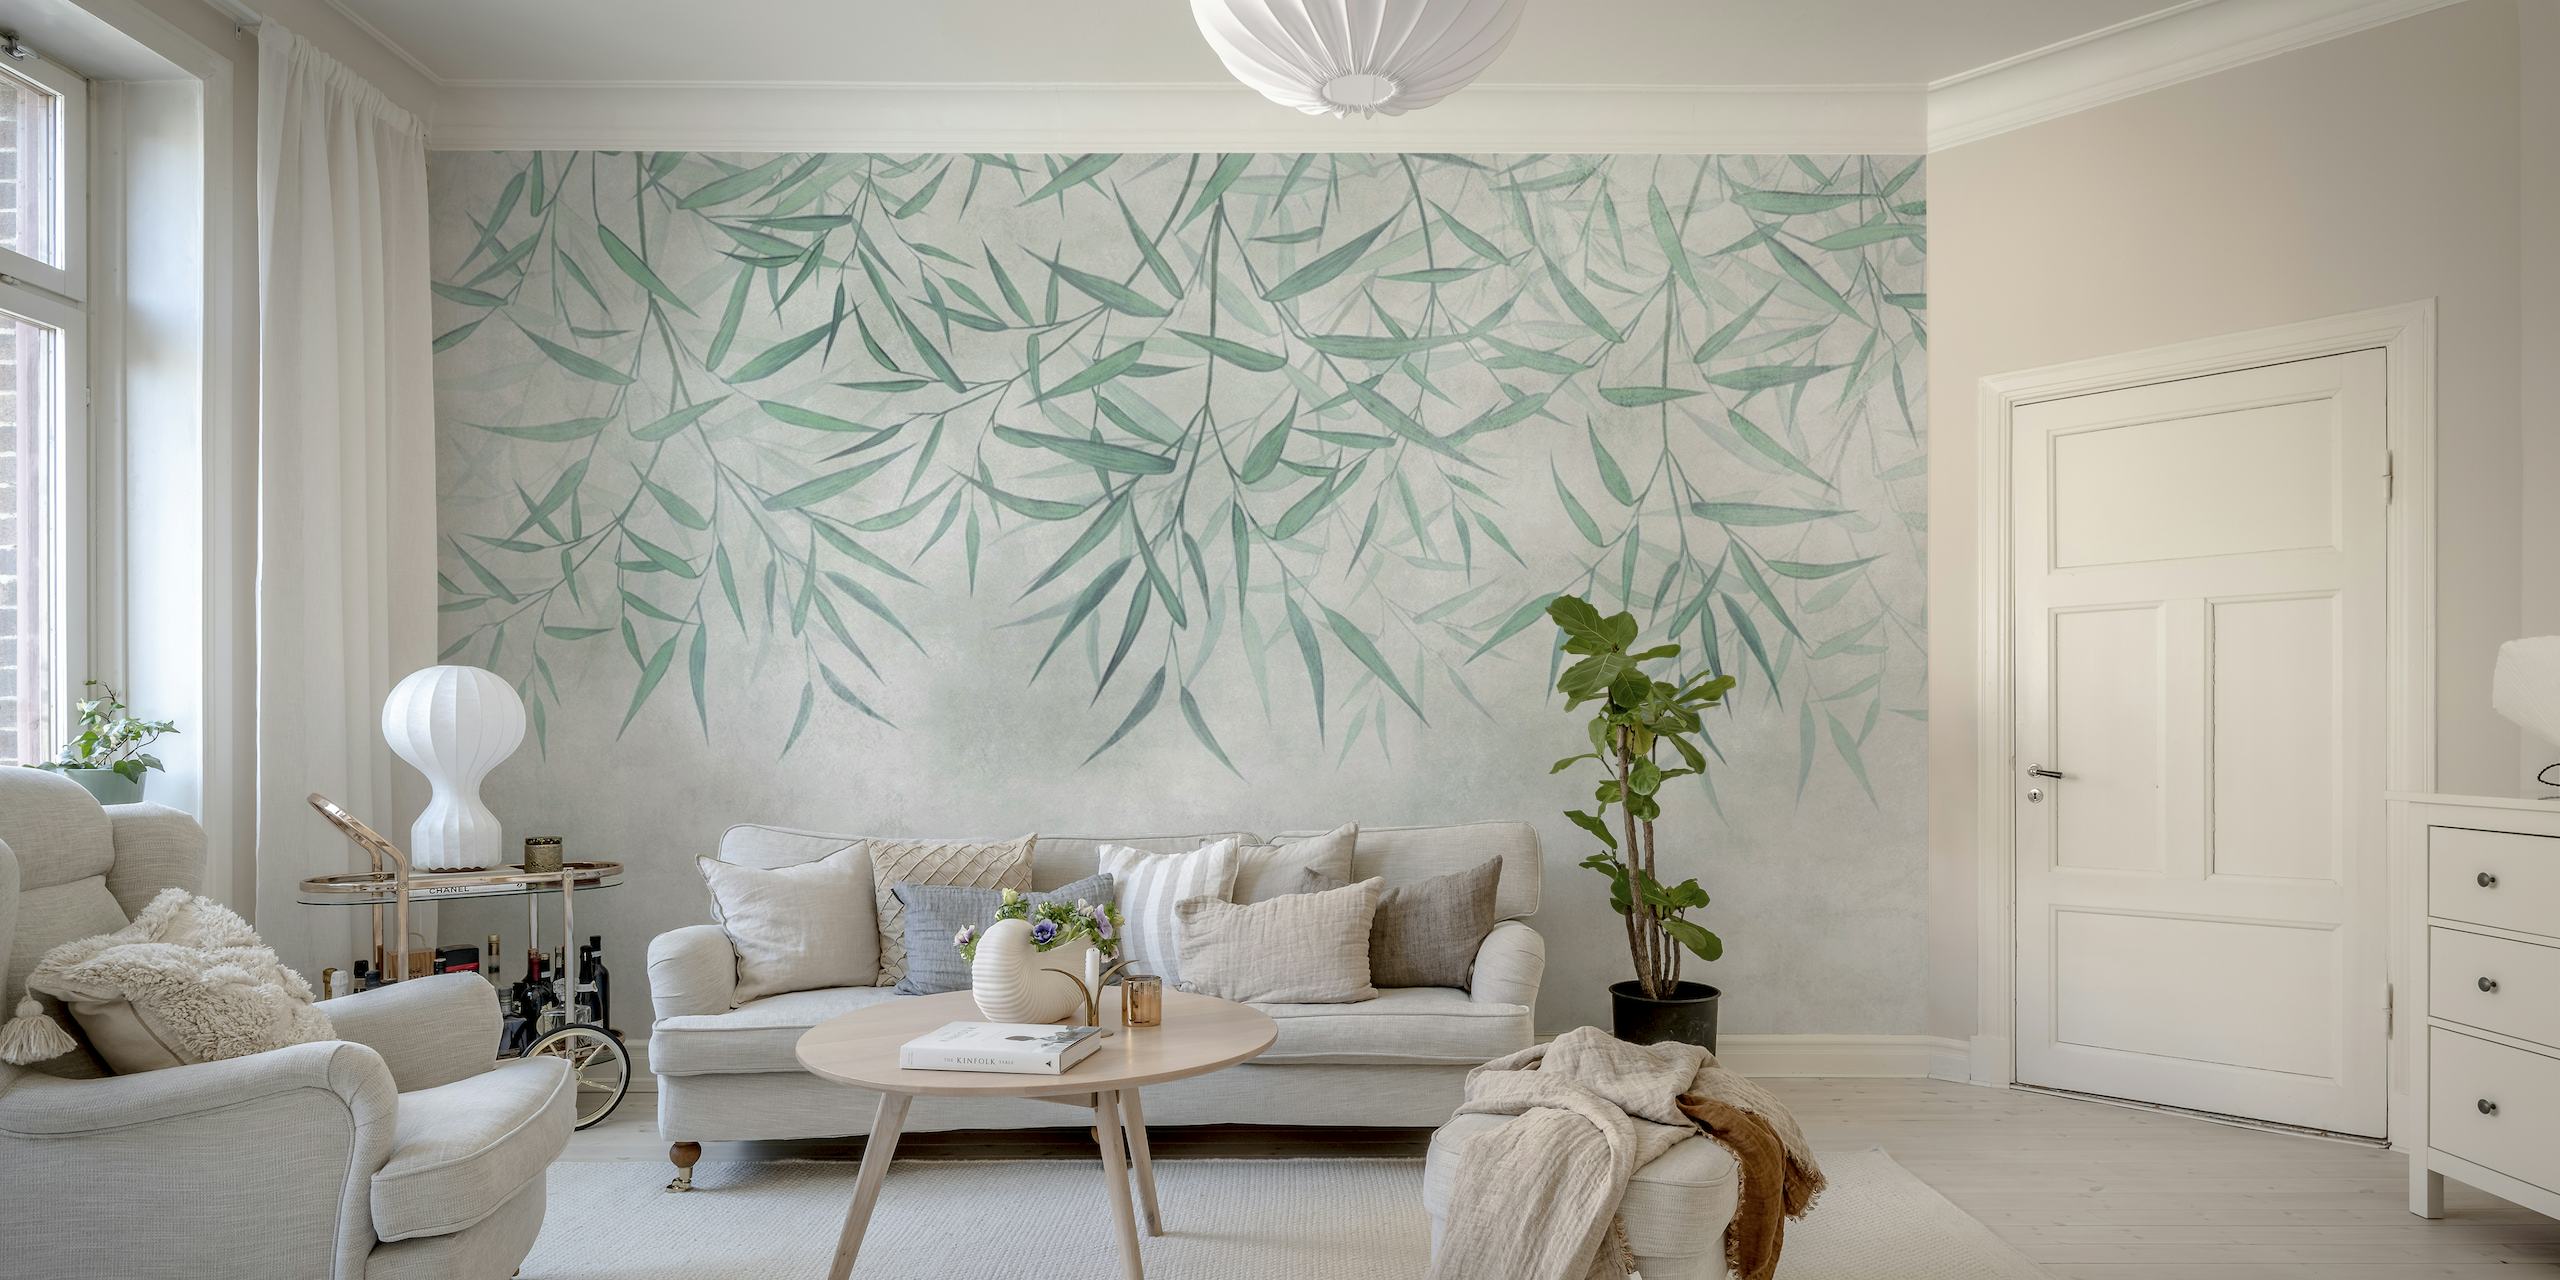 Murale murale de feuilles de bambou suspendues avec un fond texturé doux, créant une atmosphère paisible et naturelle